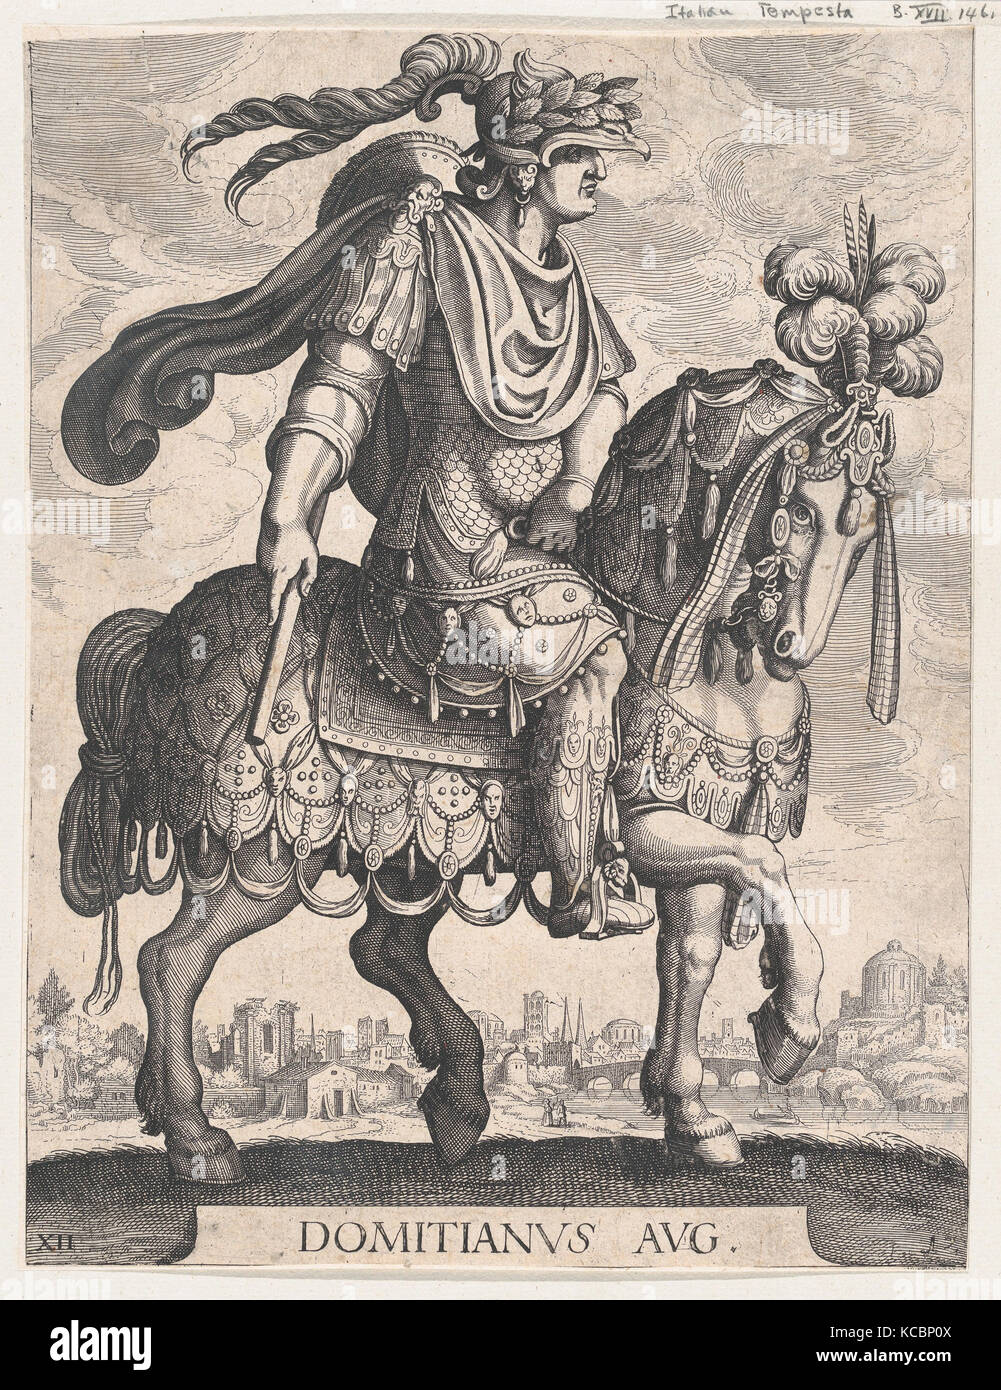 Planche 12 : l'empereur Domitien à cheval, de 'Les douze Césars Romains' après Tempesta, Matthäus Merian l'ancien, 1610 Banque D'Images